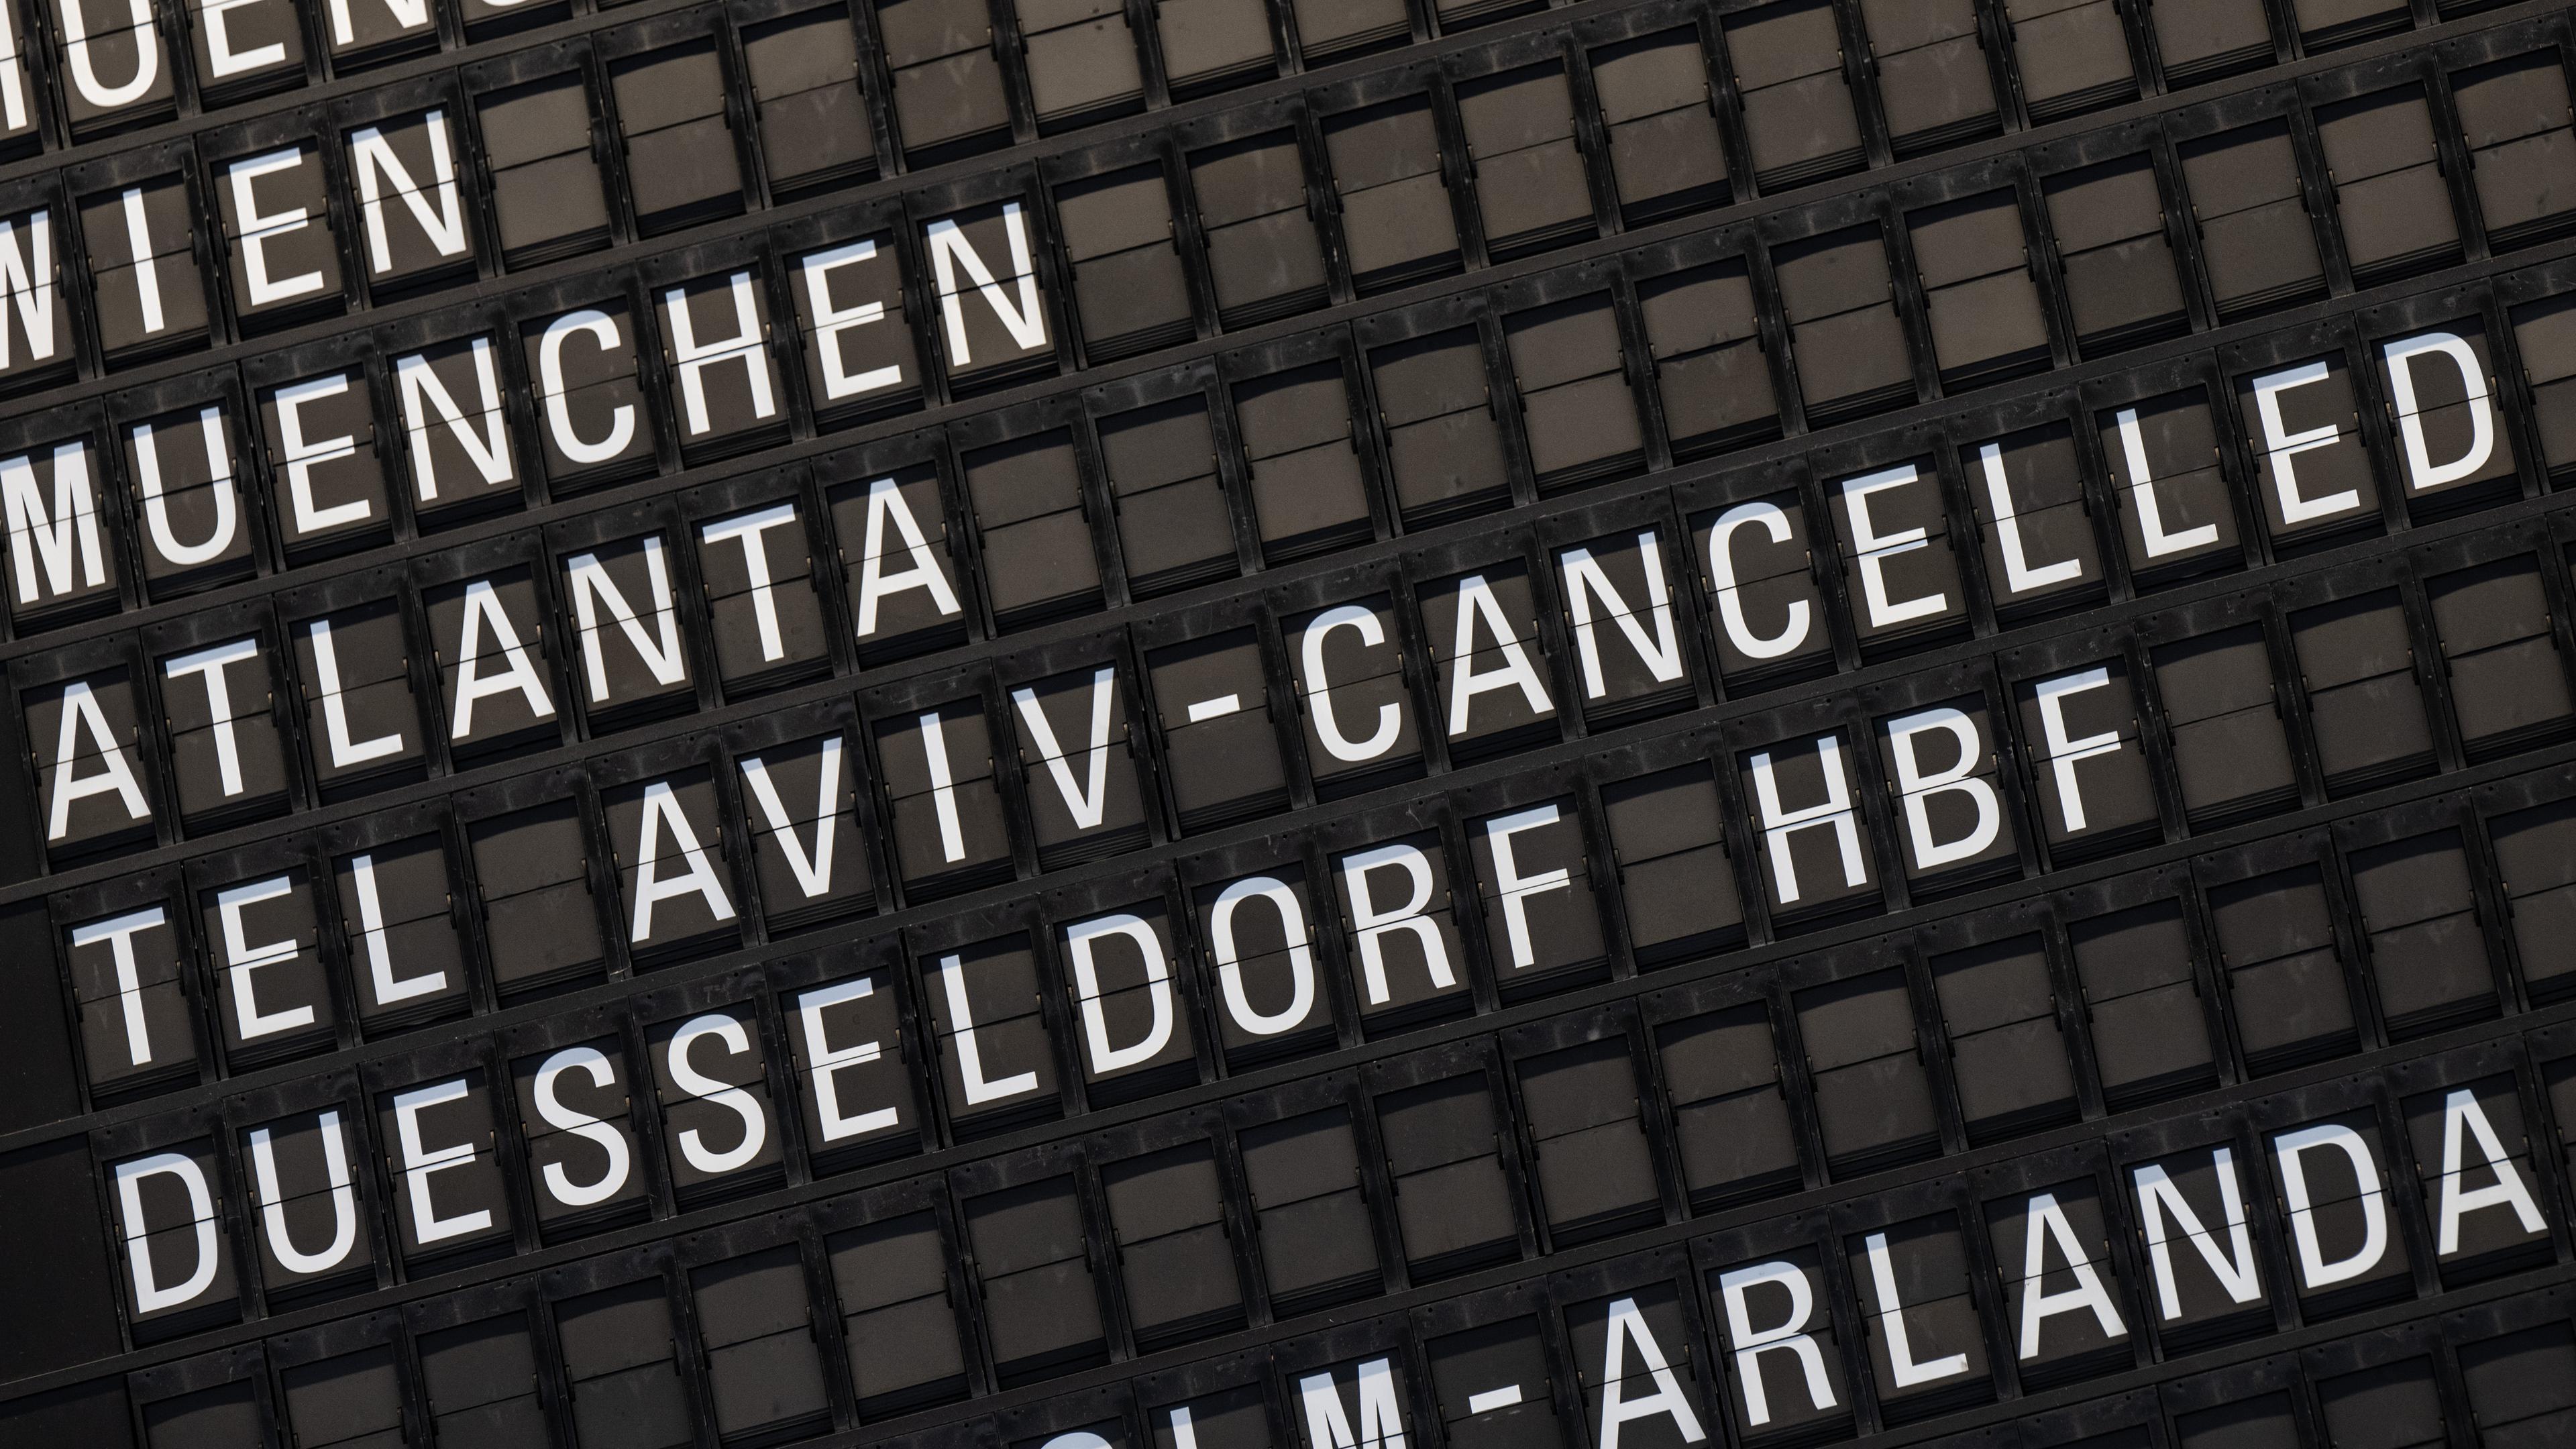 Die Anzeige am Flughafen Frankfurt zeigt, dass ein Flug nach Tel Aviv abgesagt (cancelled) wurde.